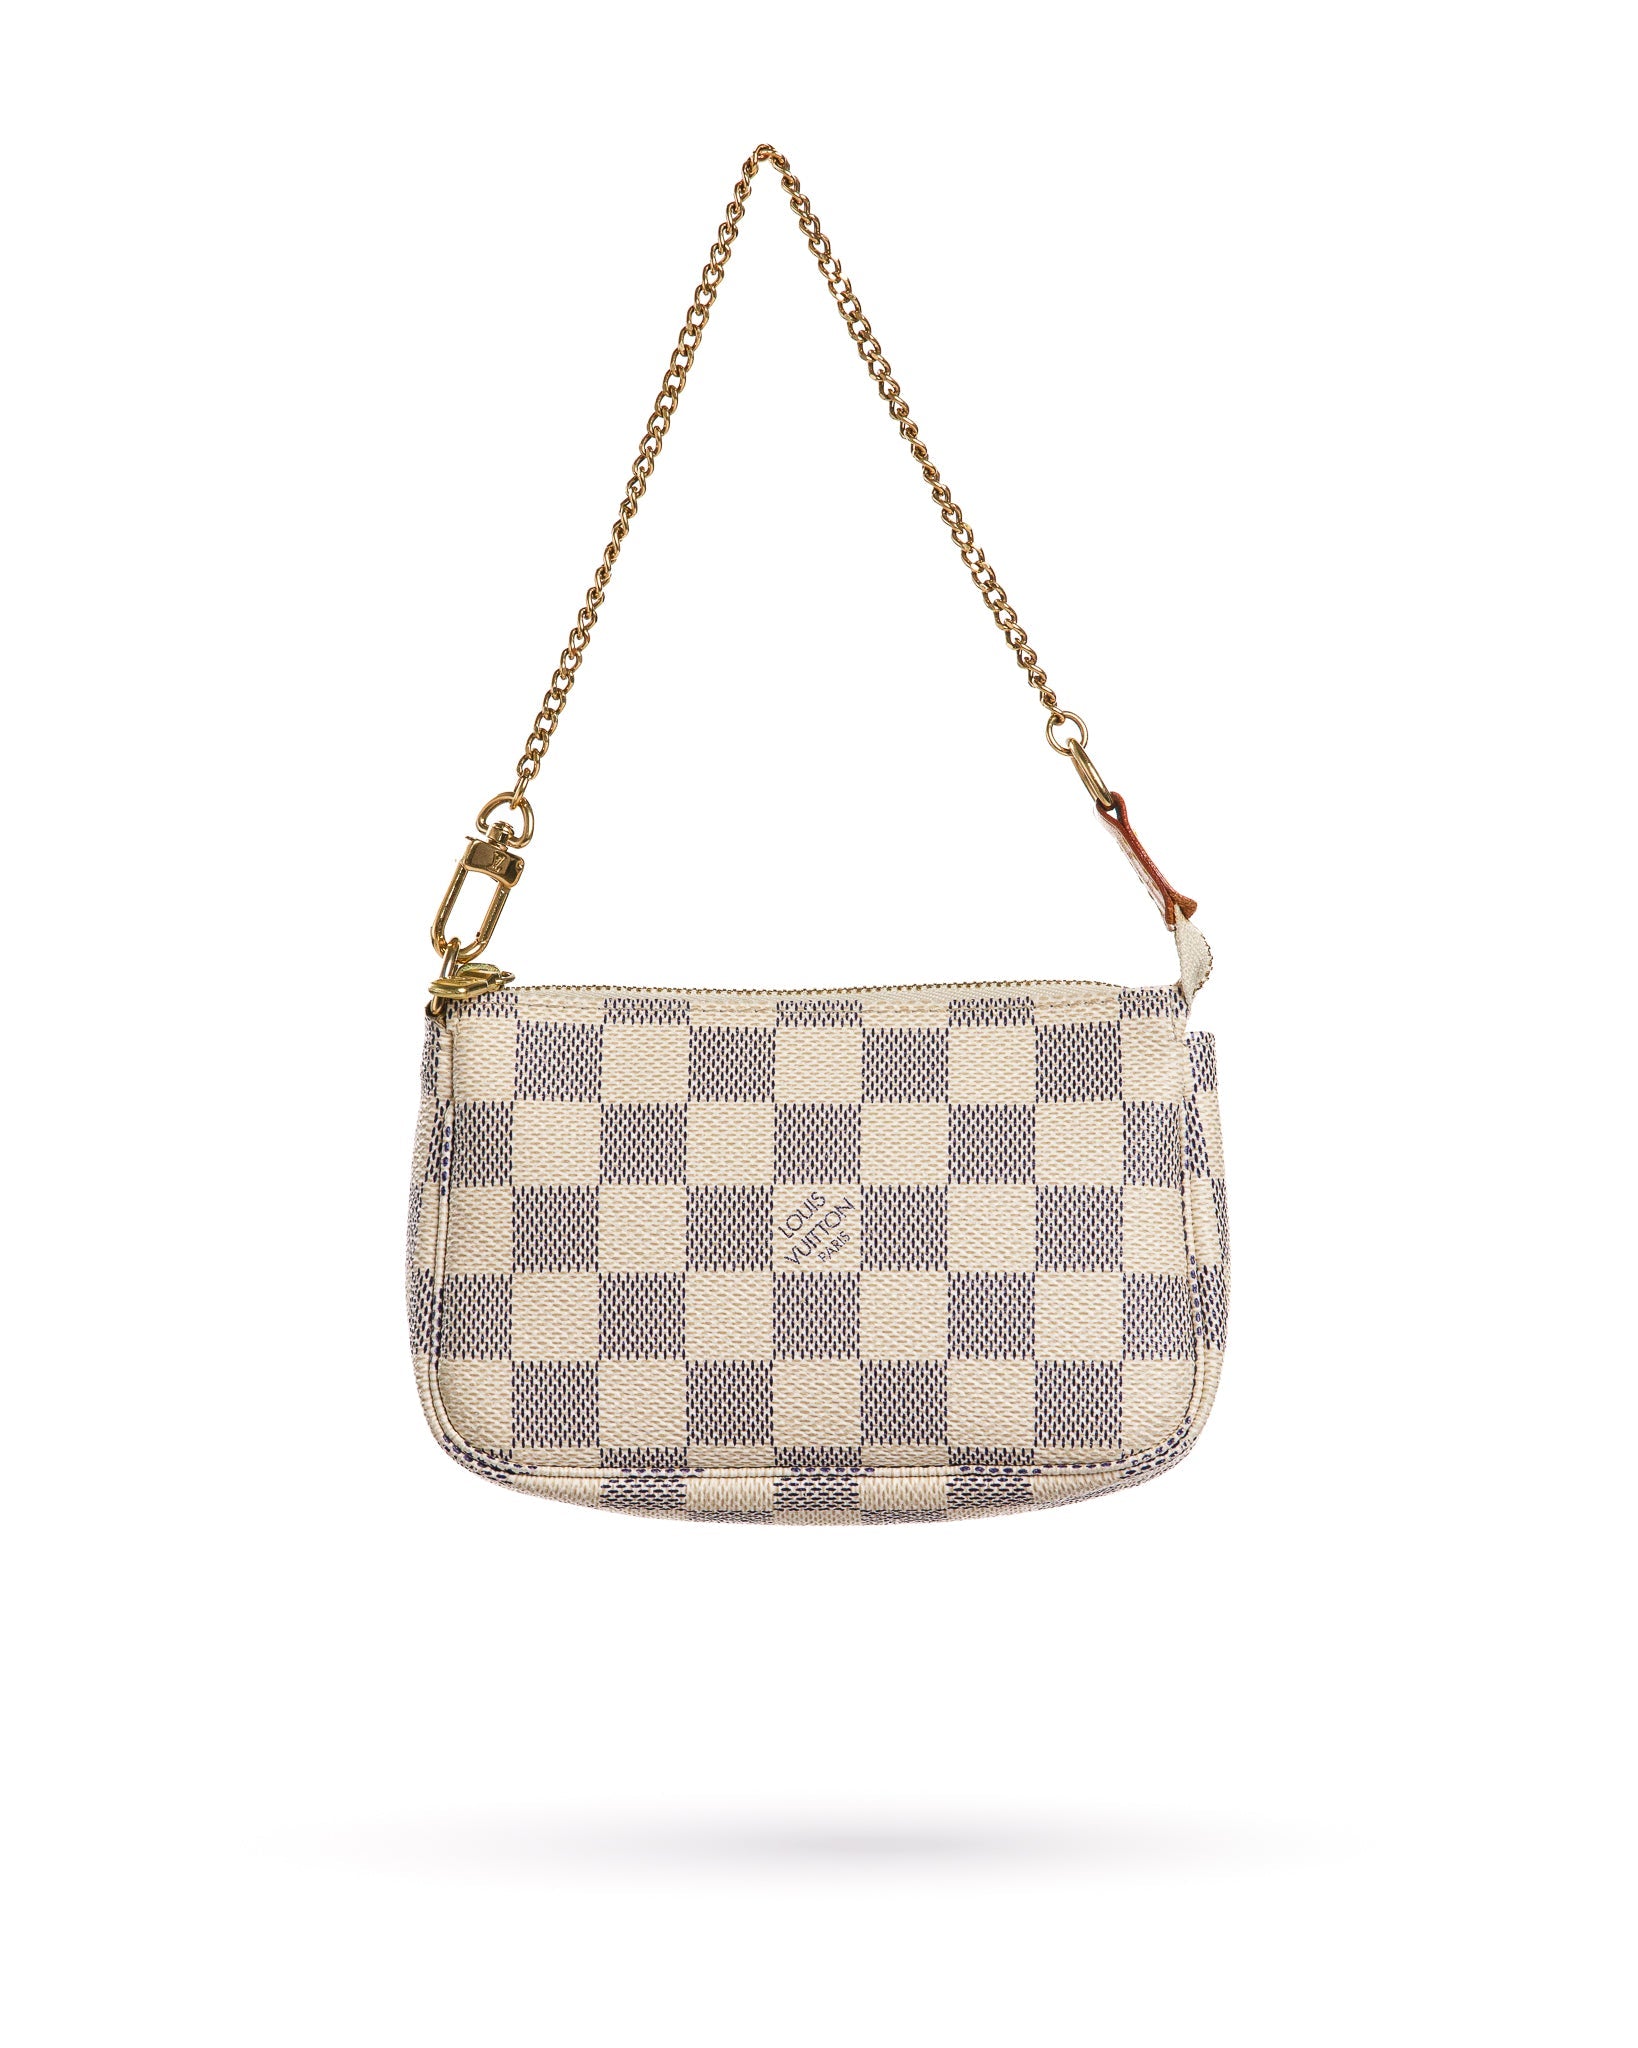 Louis Vuitton 2000s Monogram Speedy Handbag Mini: Vintage Elegance